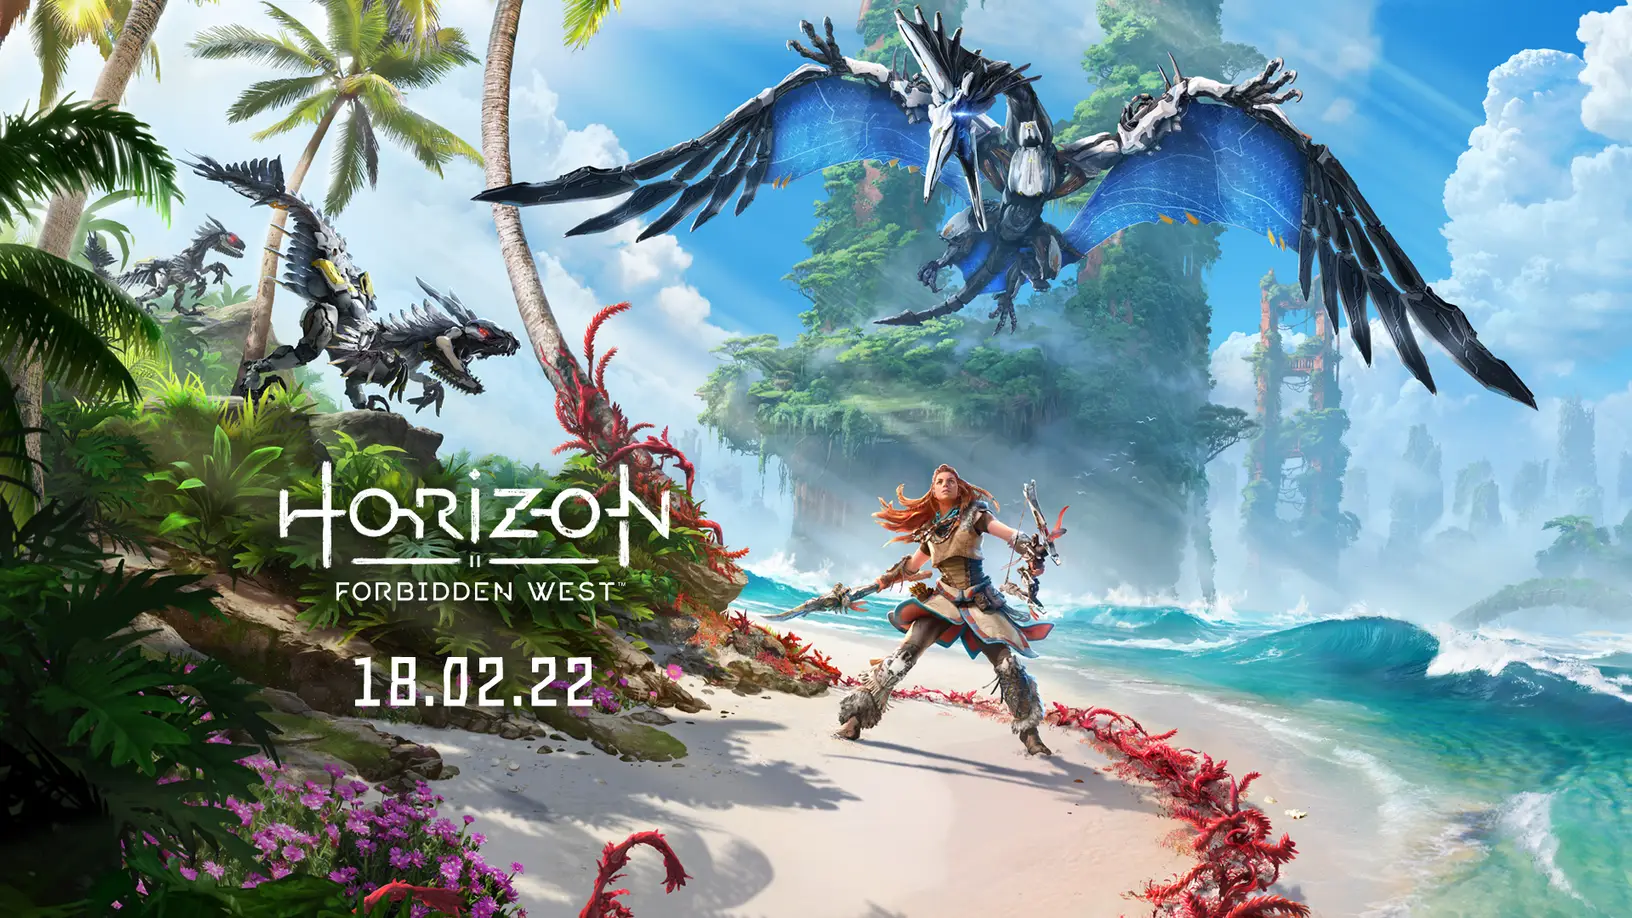 Horizon Forbidden West erscheint am 18. Februar 2022